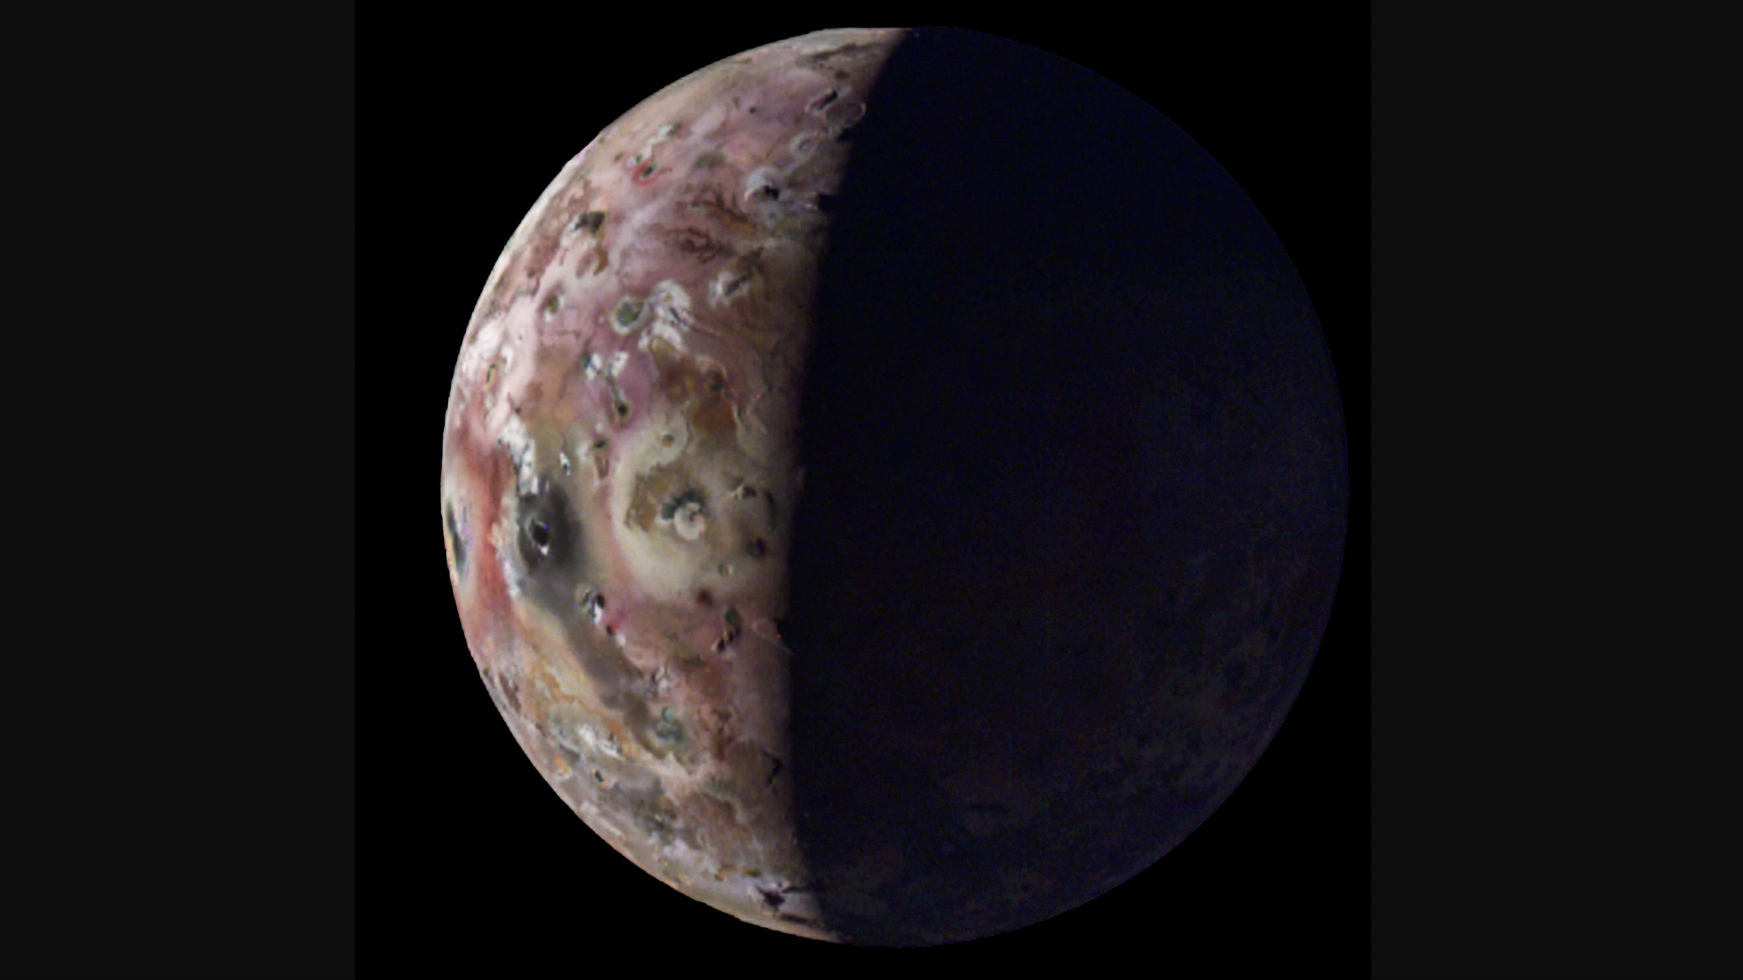 Ο ανιχνευτής Juno της NASA καταγράφει εκπληκτικές όψεις του ηφαιστειακού φεγγαριού Io του Δία (βίντεο)